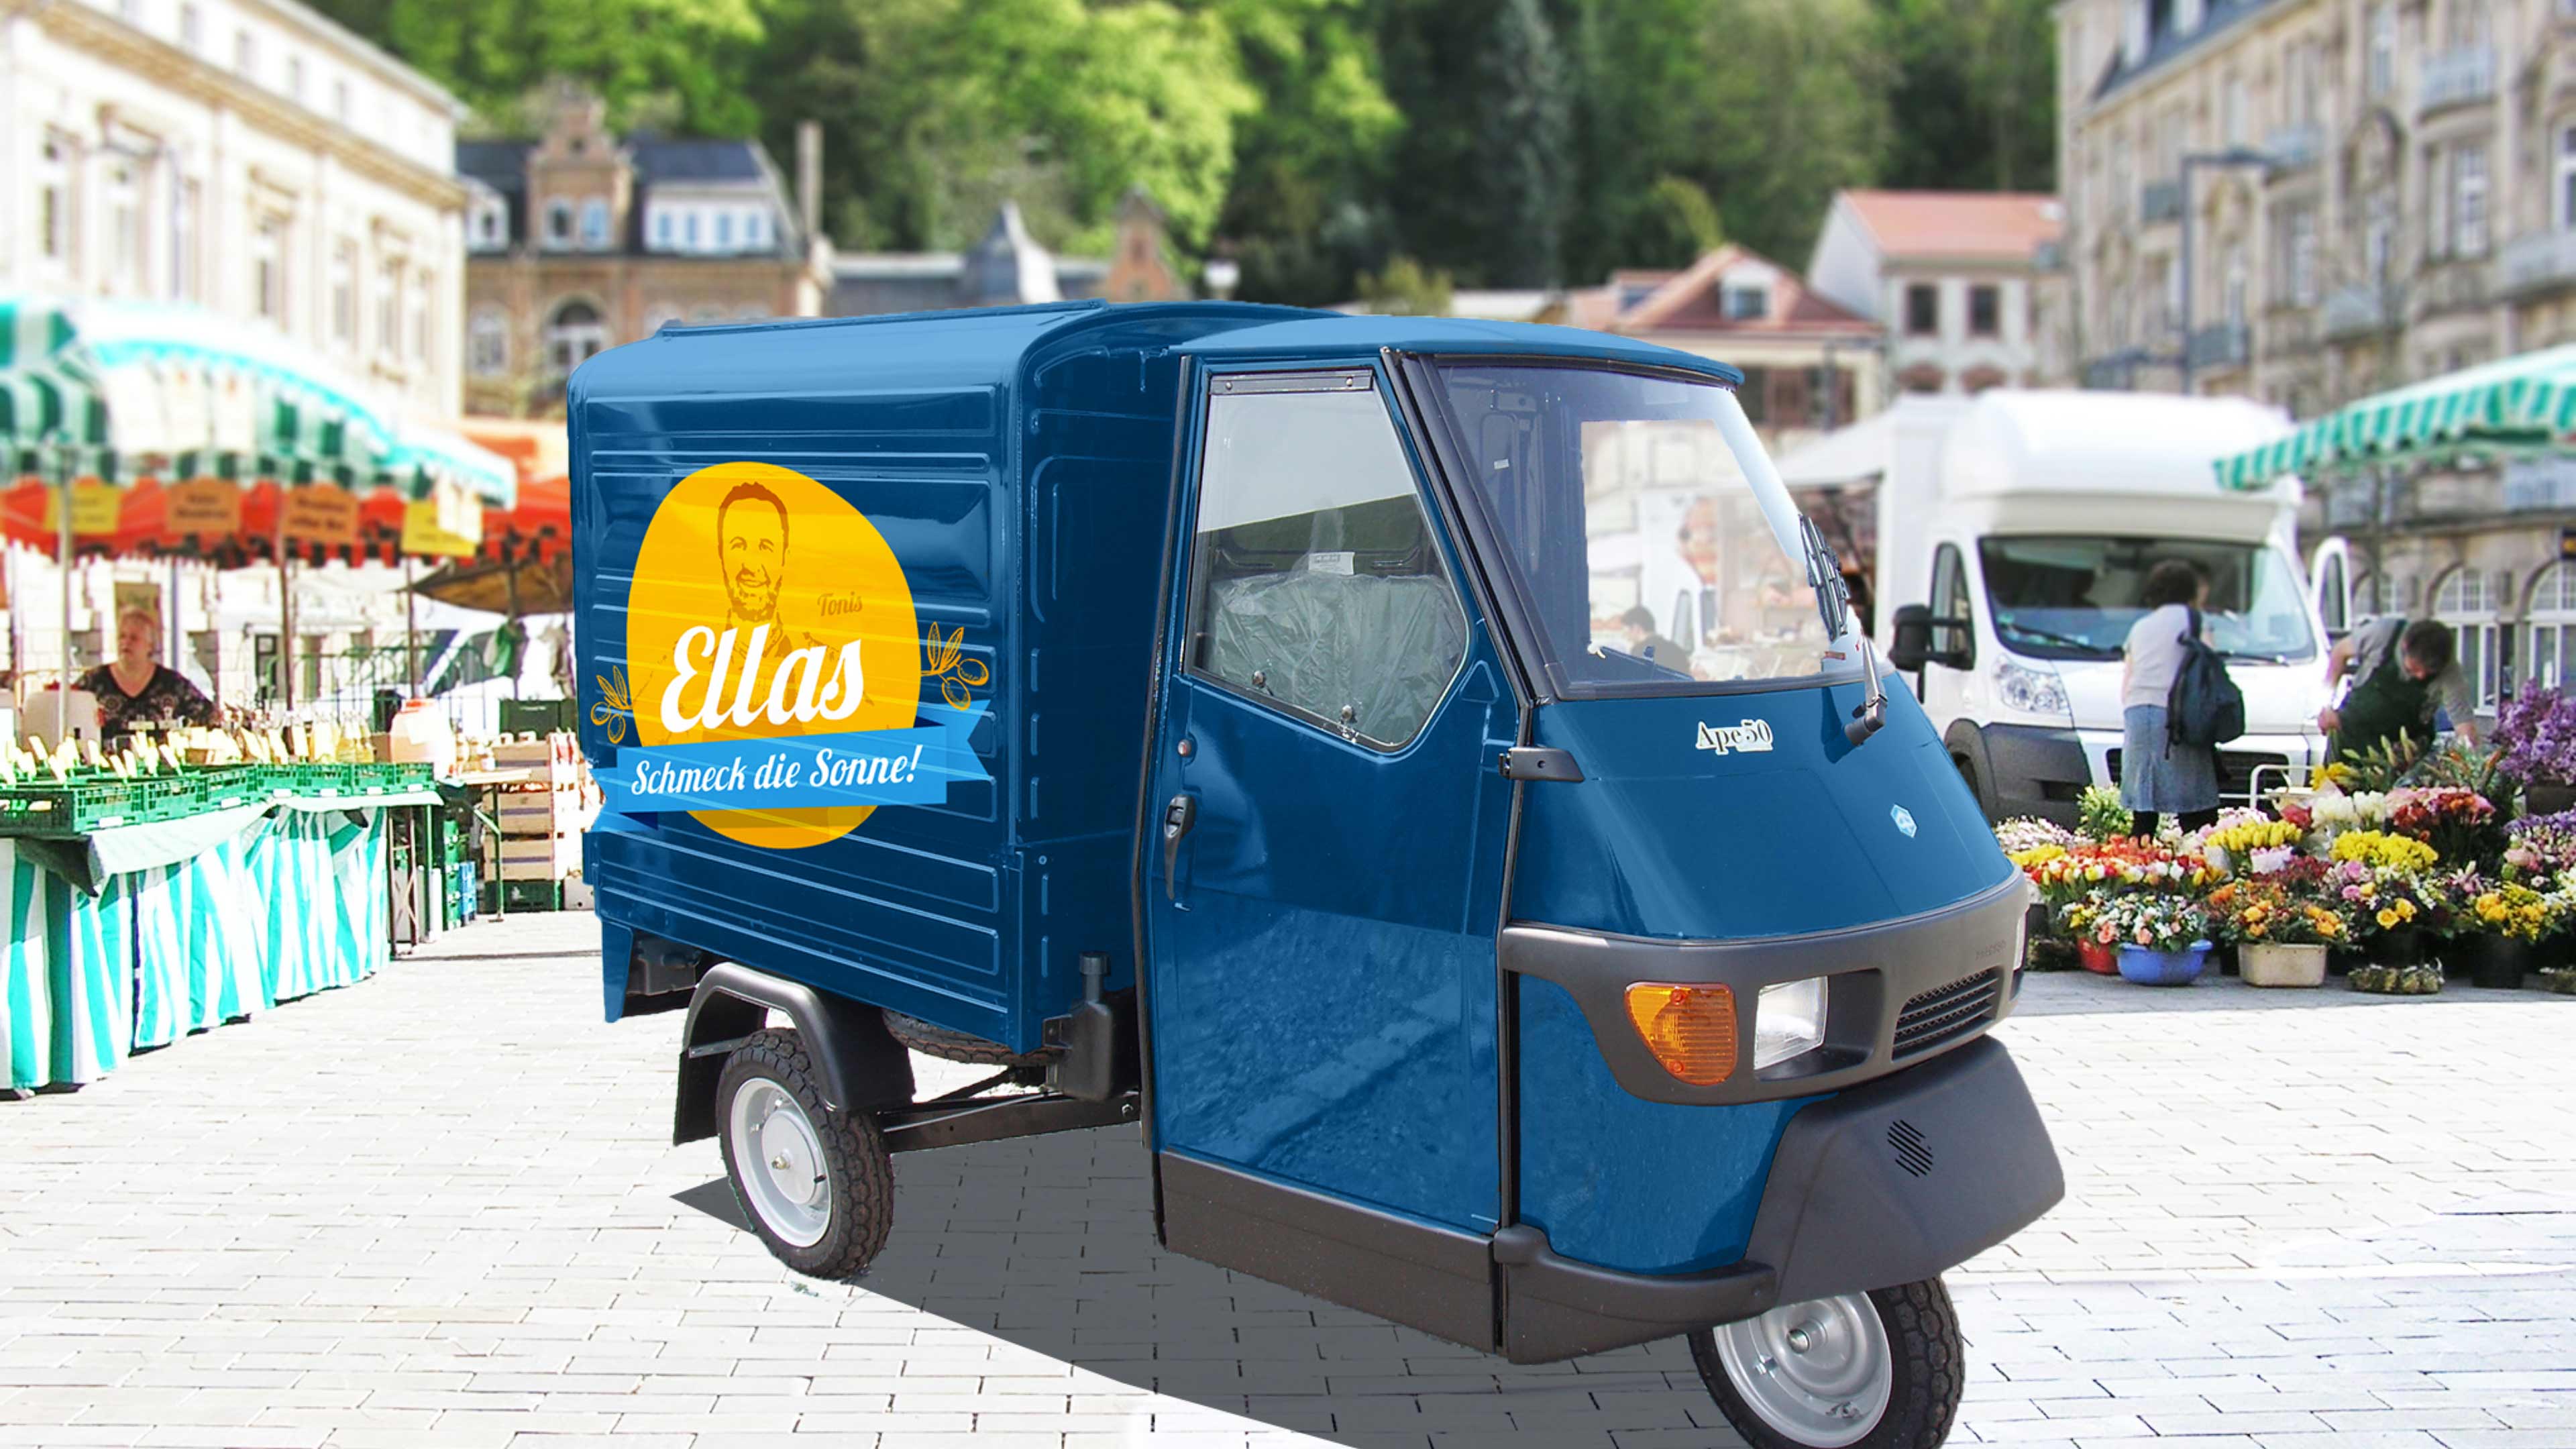 Blauer dreirädriger Kleintransporter (Ape) mit gelbem Ellas-Logo vor einem Wochenmarkt